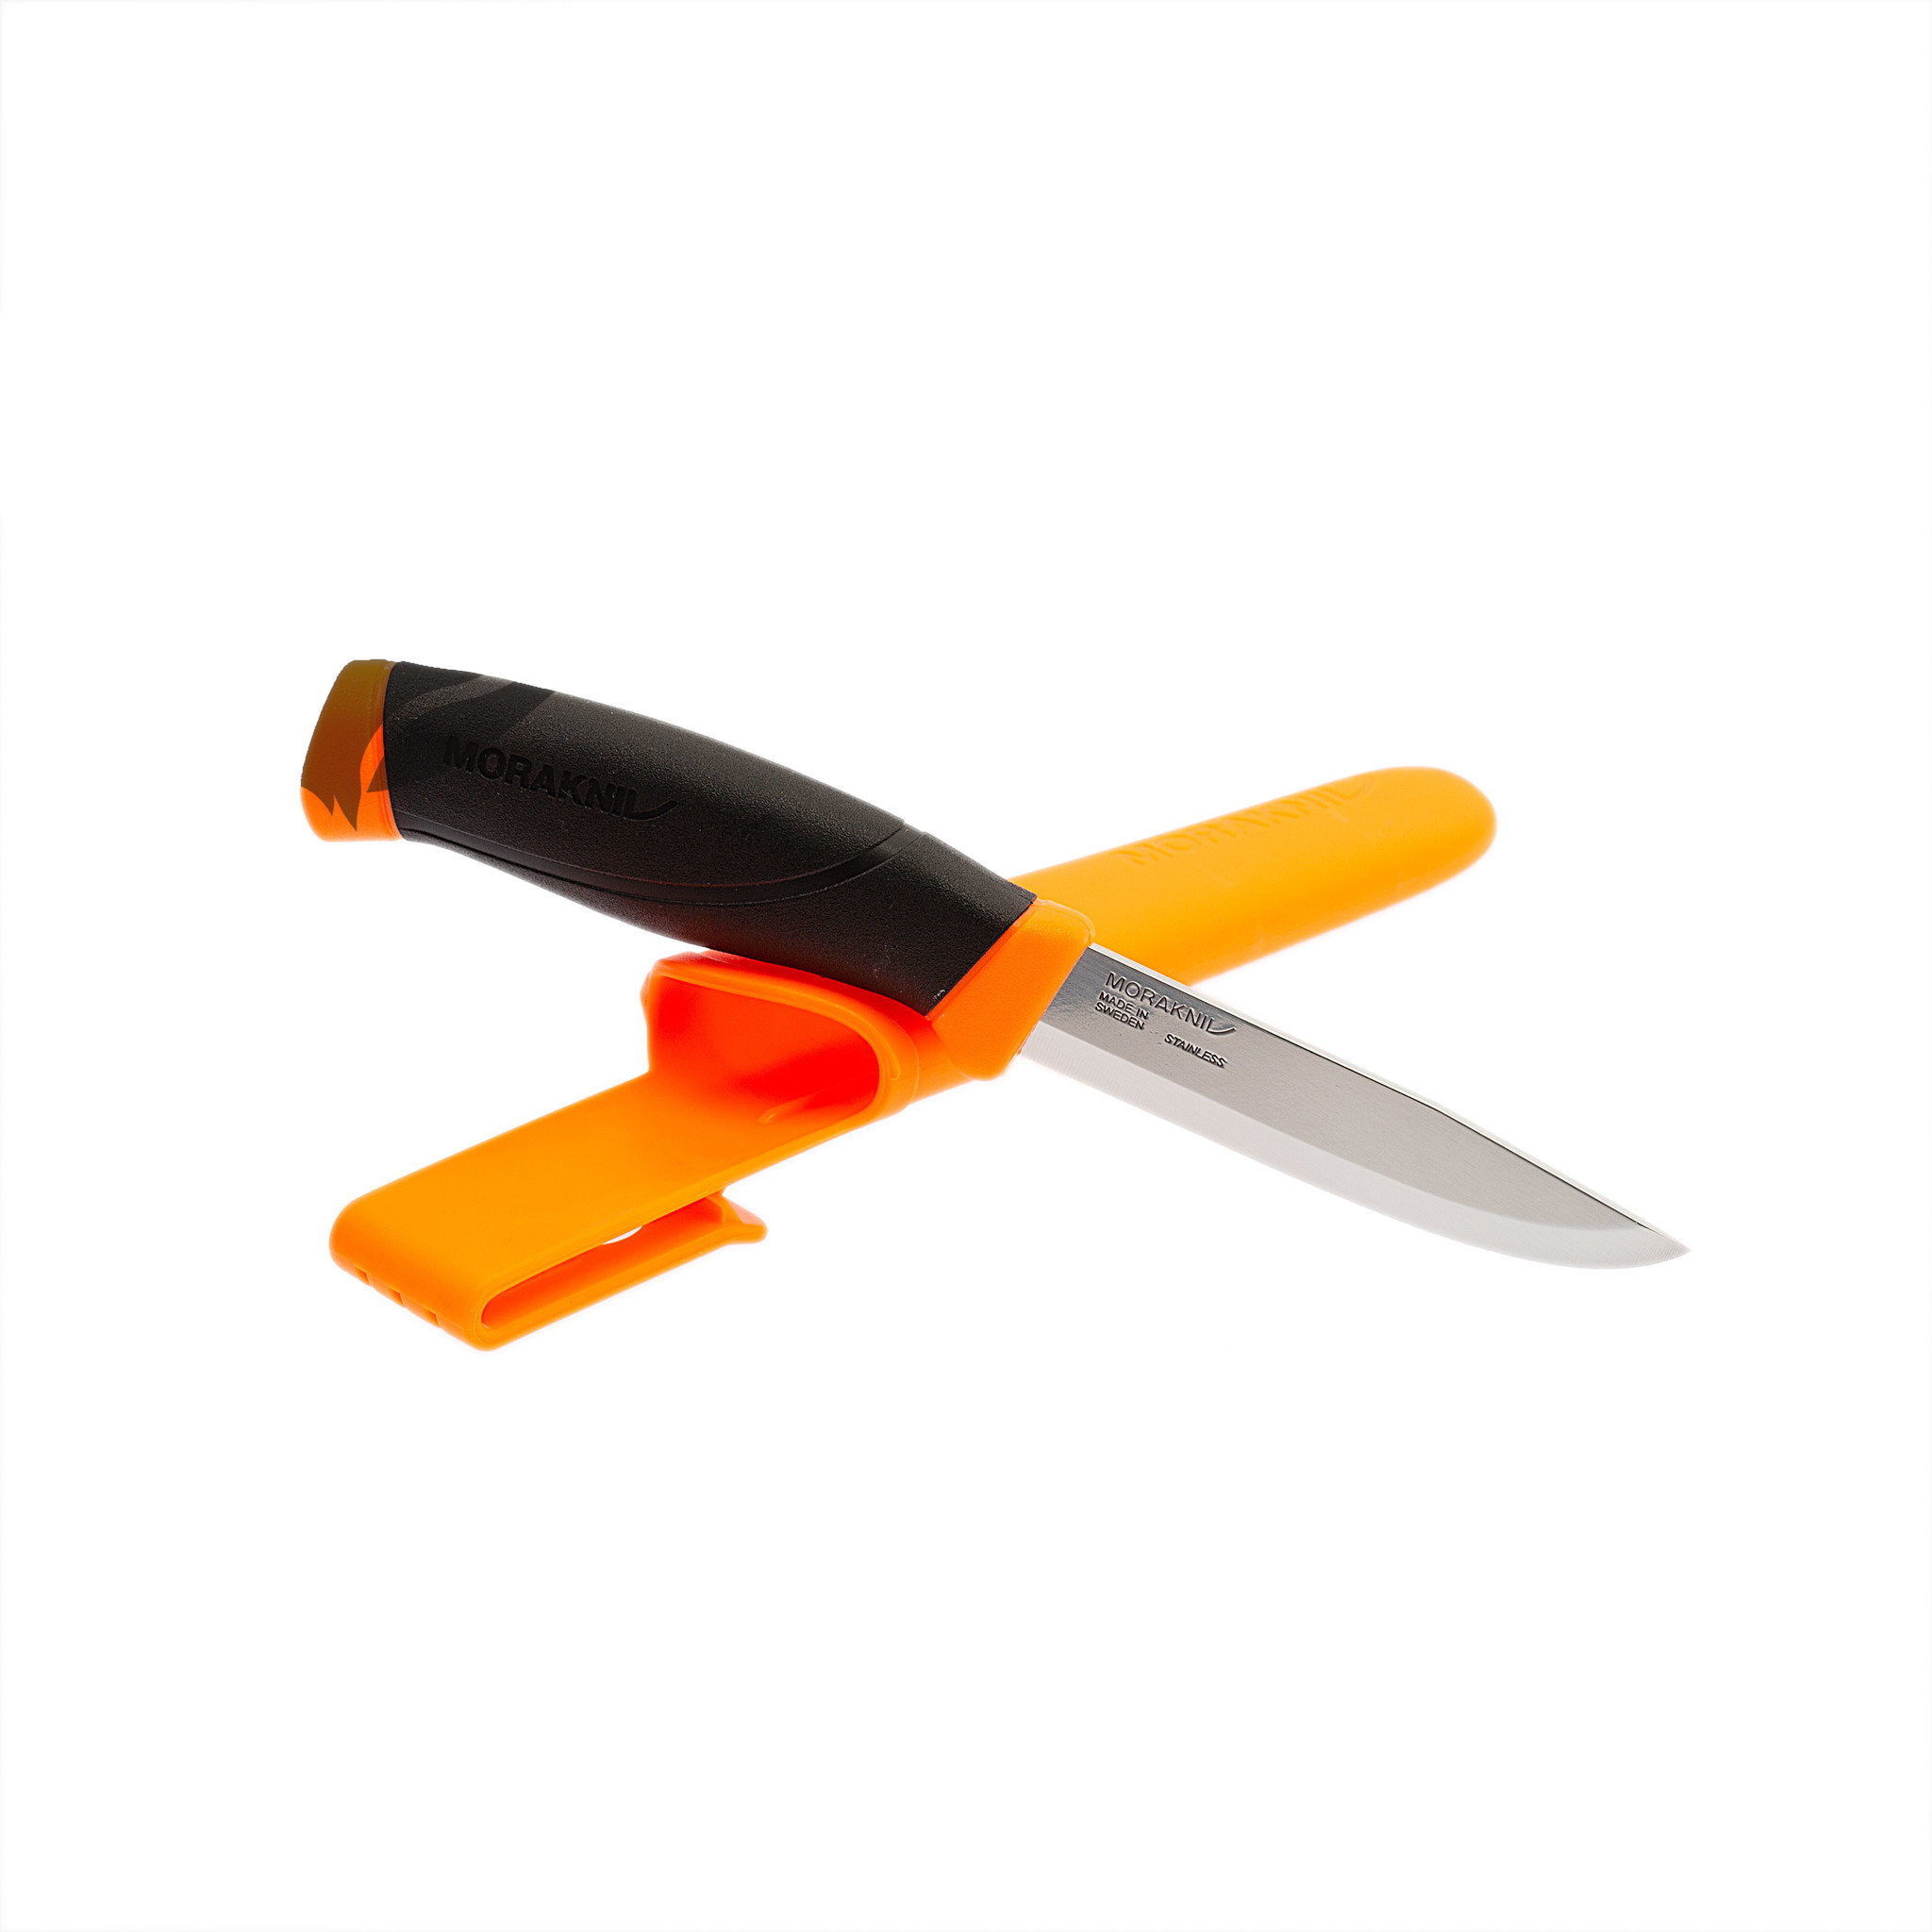 Нож с фиксированным лезвием Morakniv Companion Orange, сталь Sandvik 12C27, рукоять резина/пластик, оранжевый - фото 2